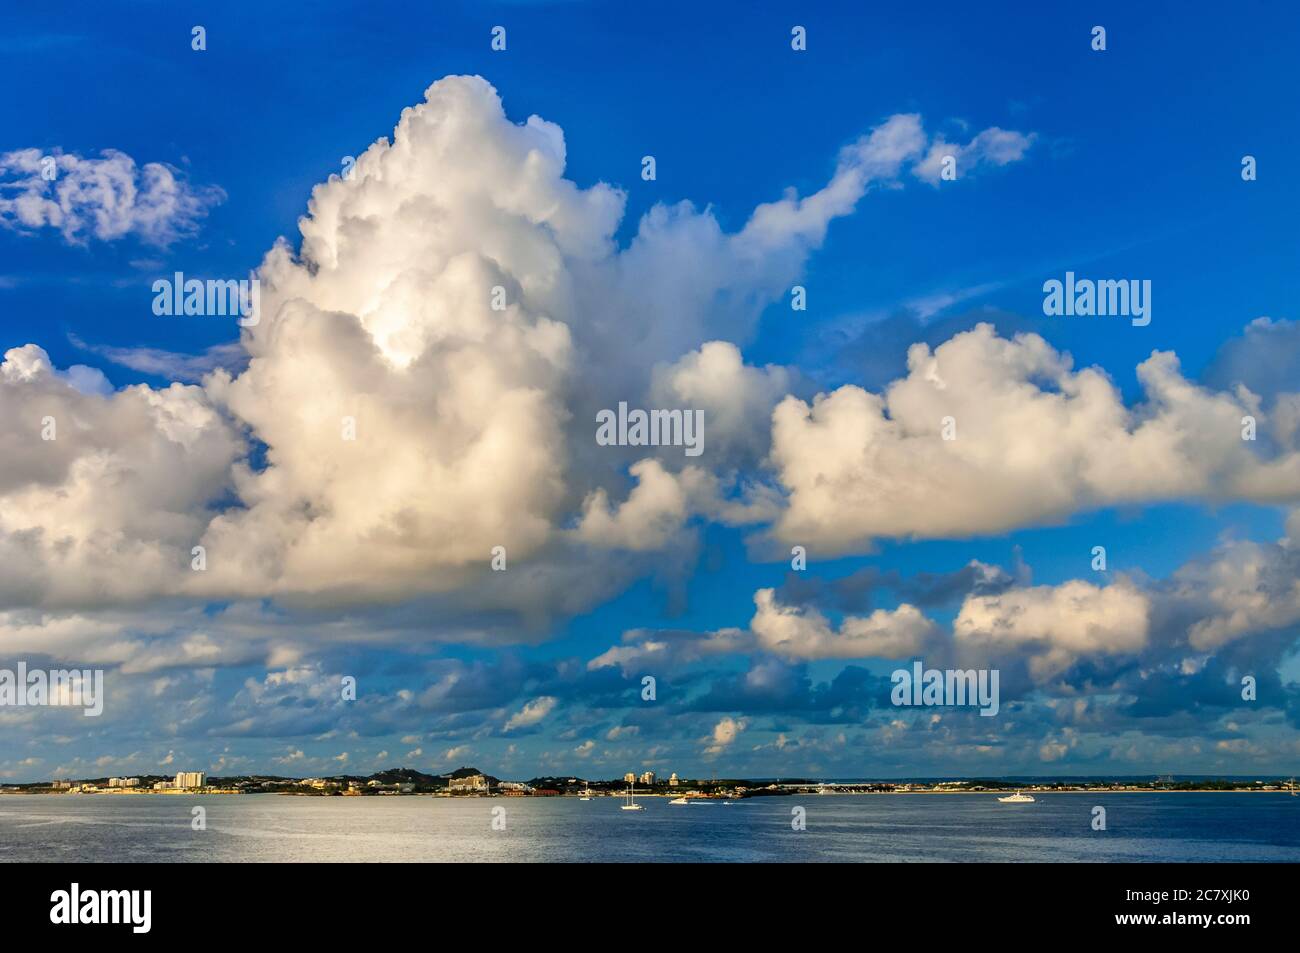 Storm clouds near St. Maarten, Caribbean Islands. Stock Photo